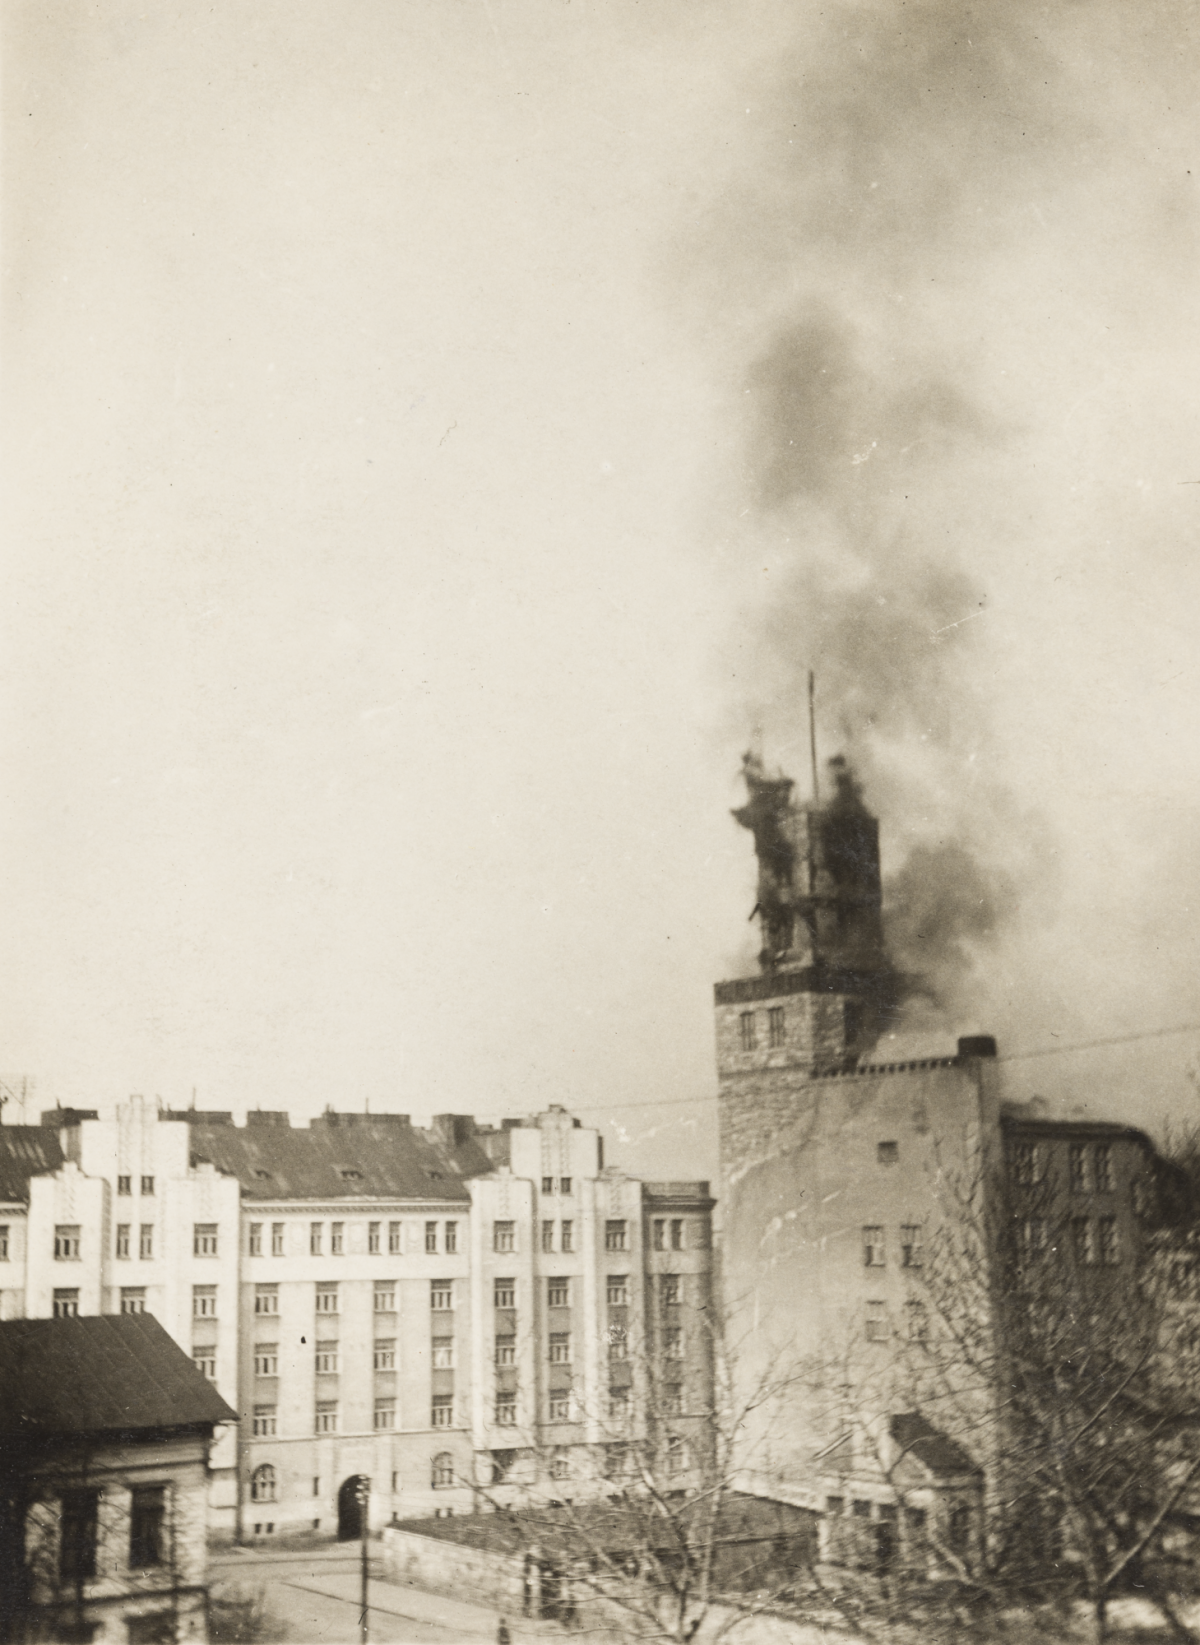 Kuva Hakaniemen työväentalon tornista Helsingin valtauksen aikana 13.4.1918. Torniin on osunut pommi ja siitä nousee mustaa savua.